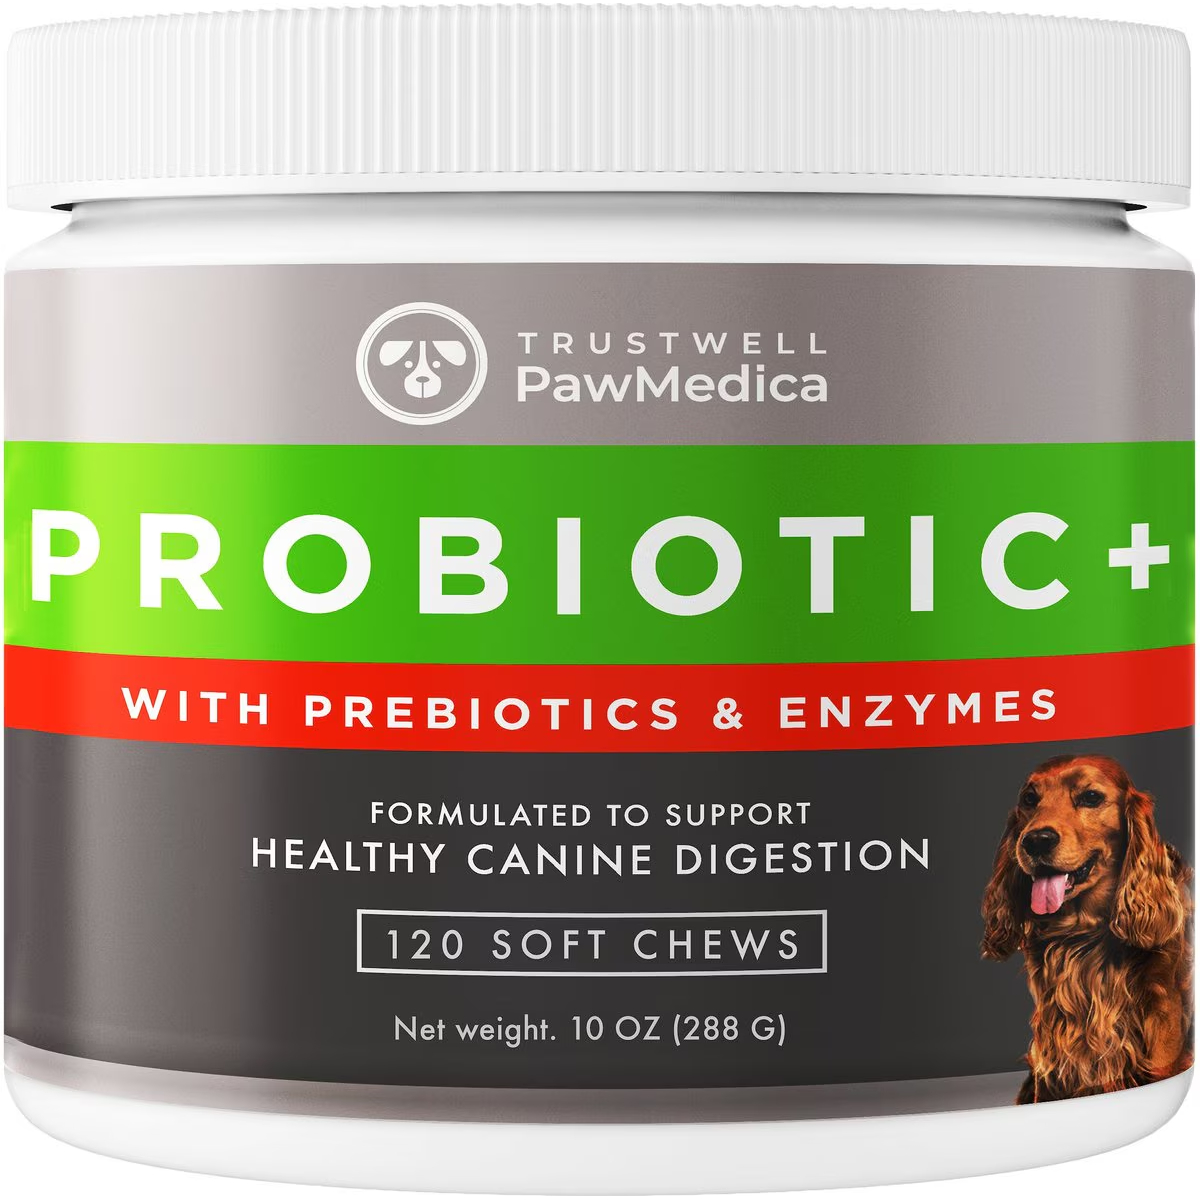 Pawmedica Probiotics With Prebiotics + Enzymes